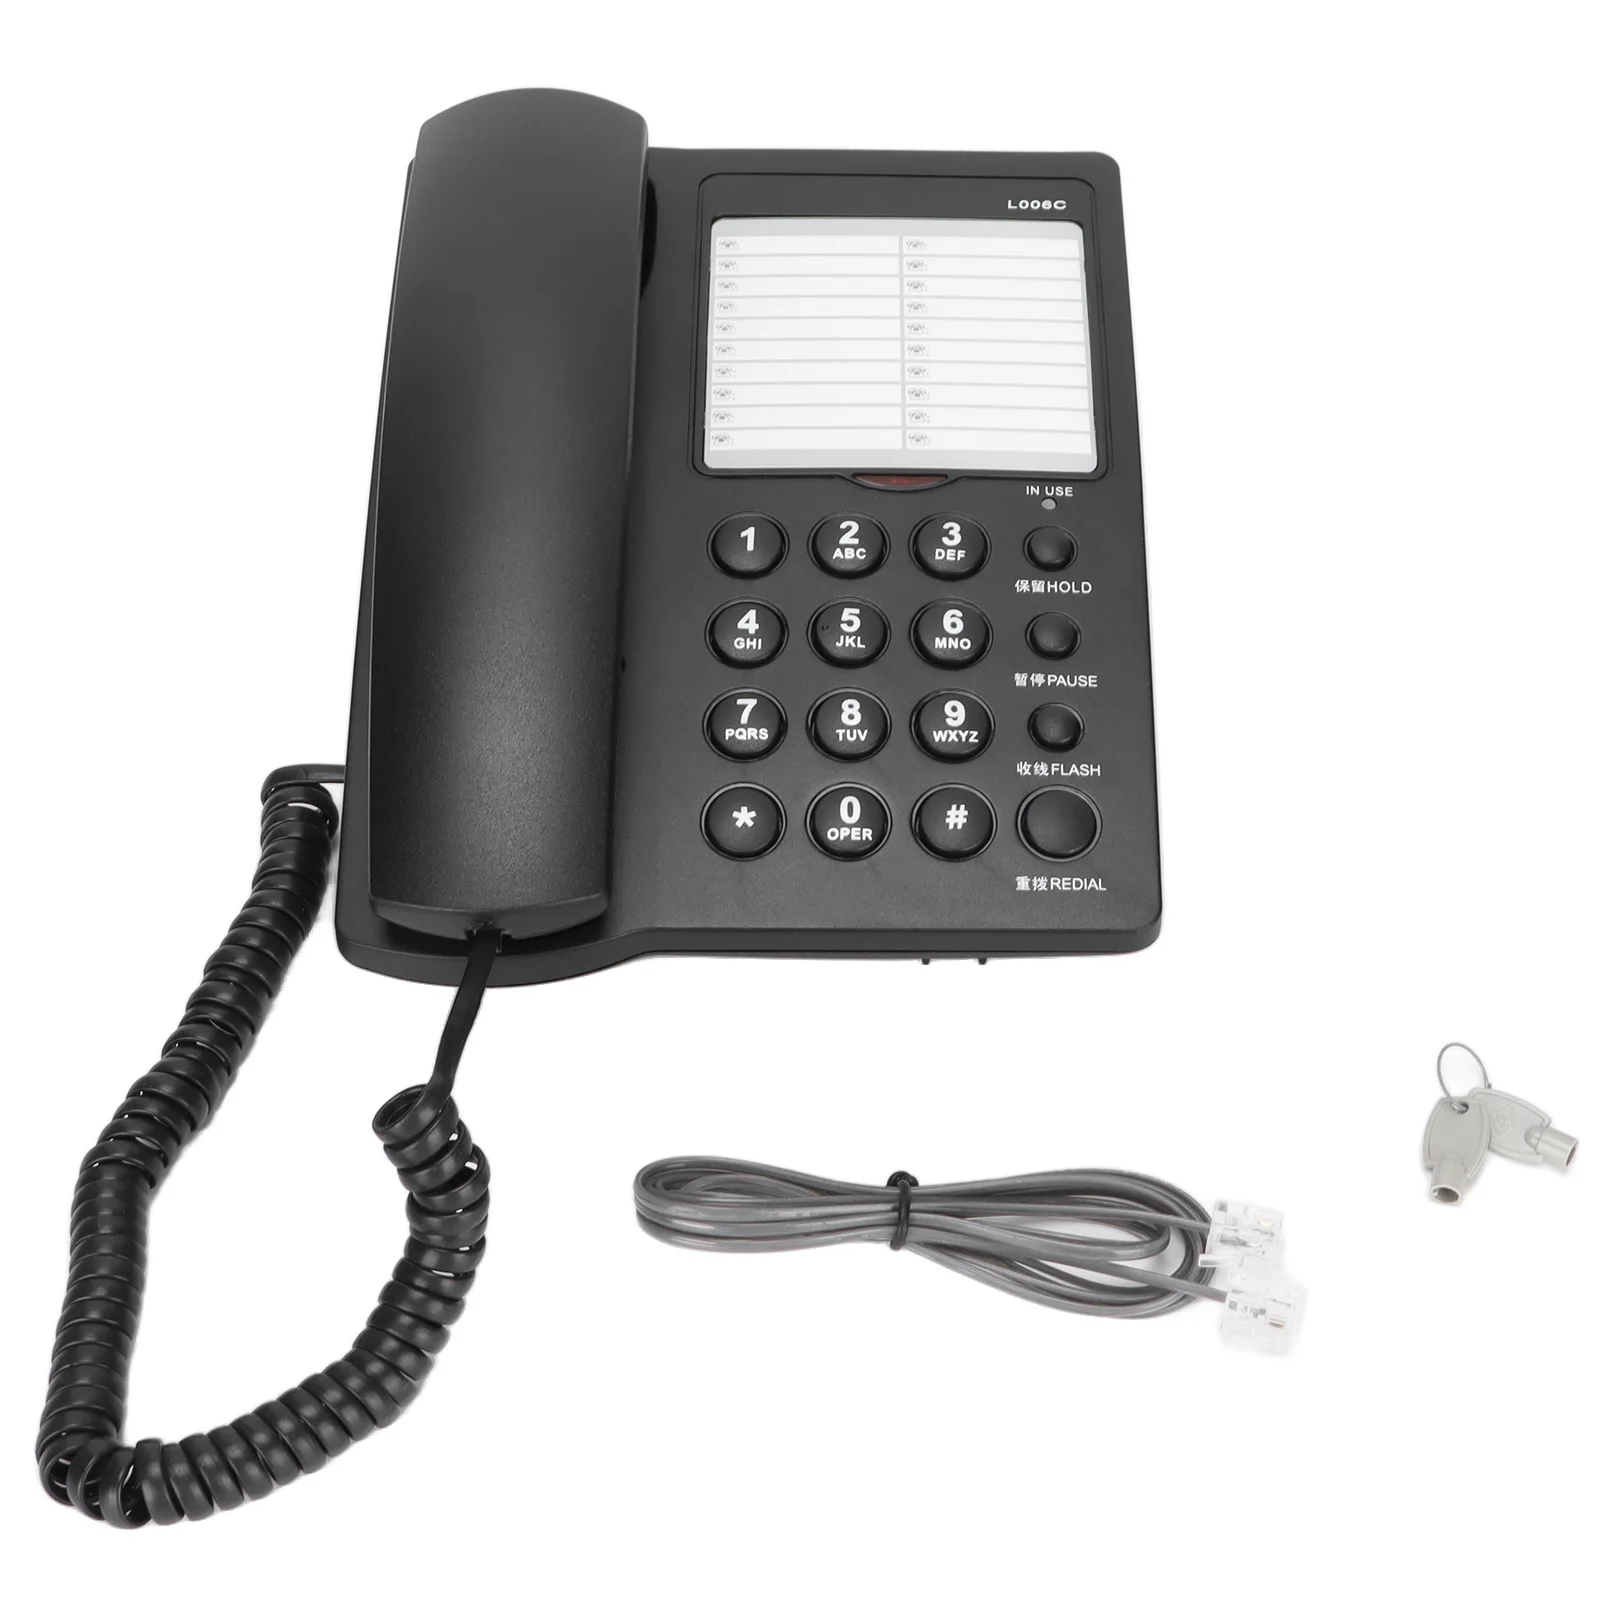 Настольный проводной телефон L006C Домашний офис Фиксированный набор номера, удержание, пауза, функция блокировки повторного набора, Регулируемая мелодия звонка